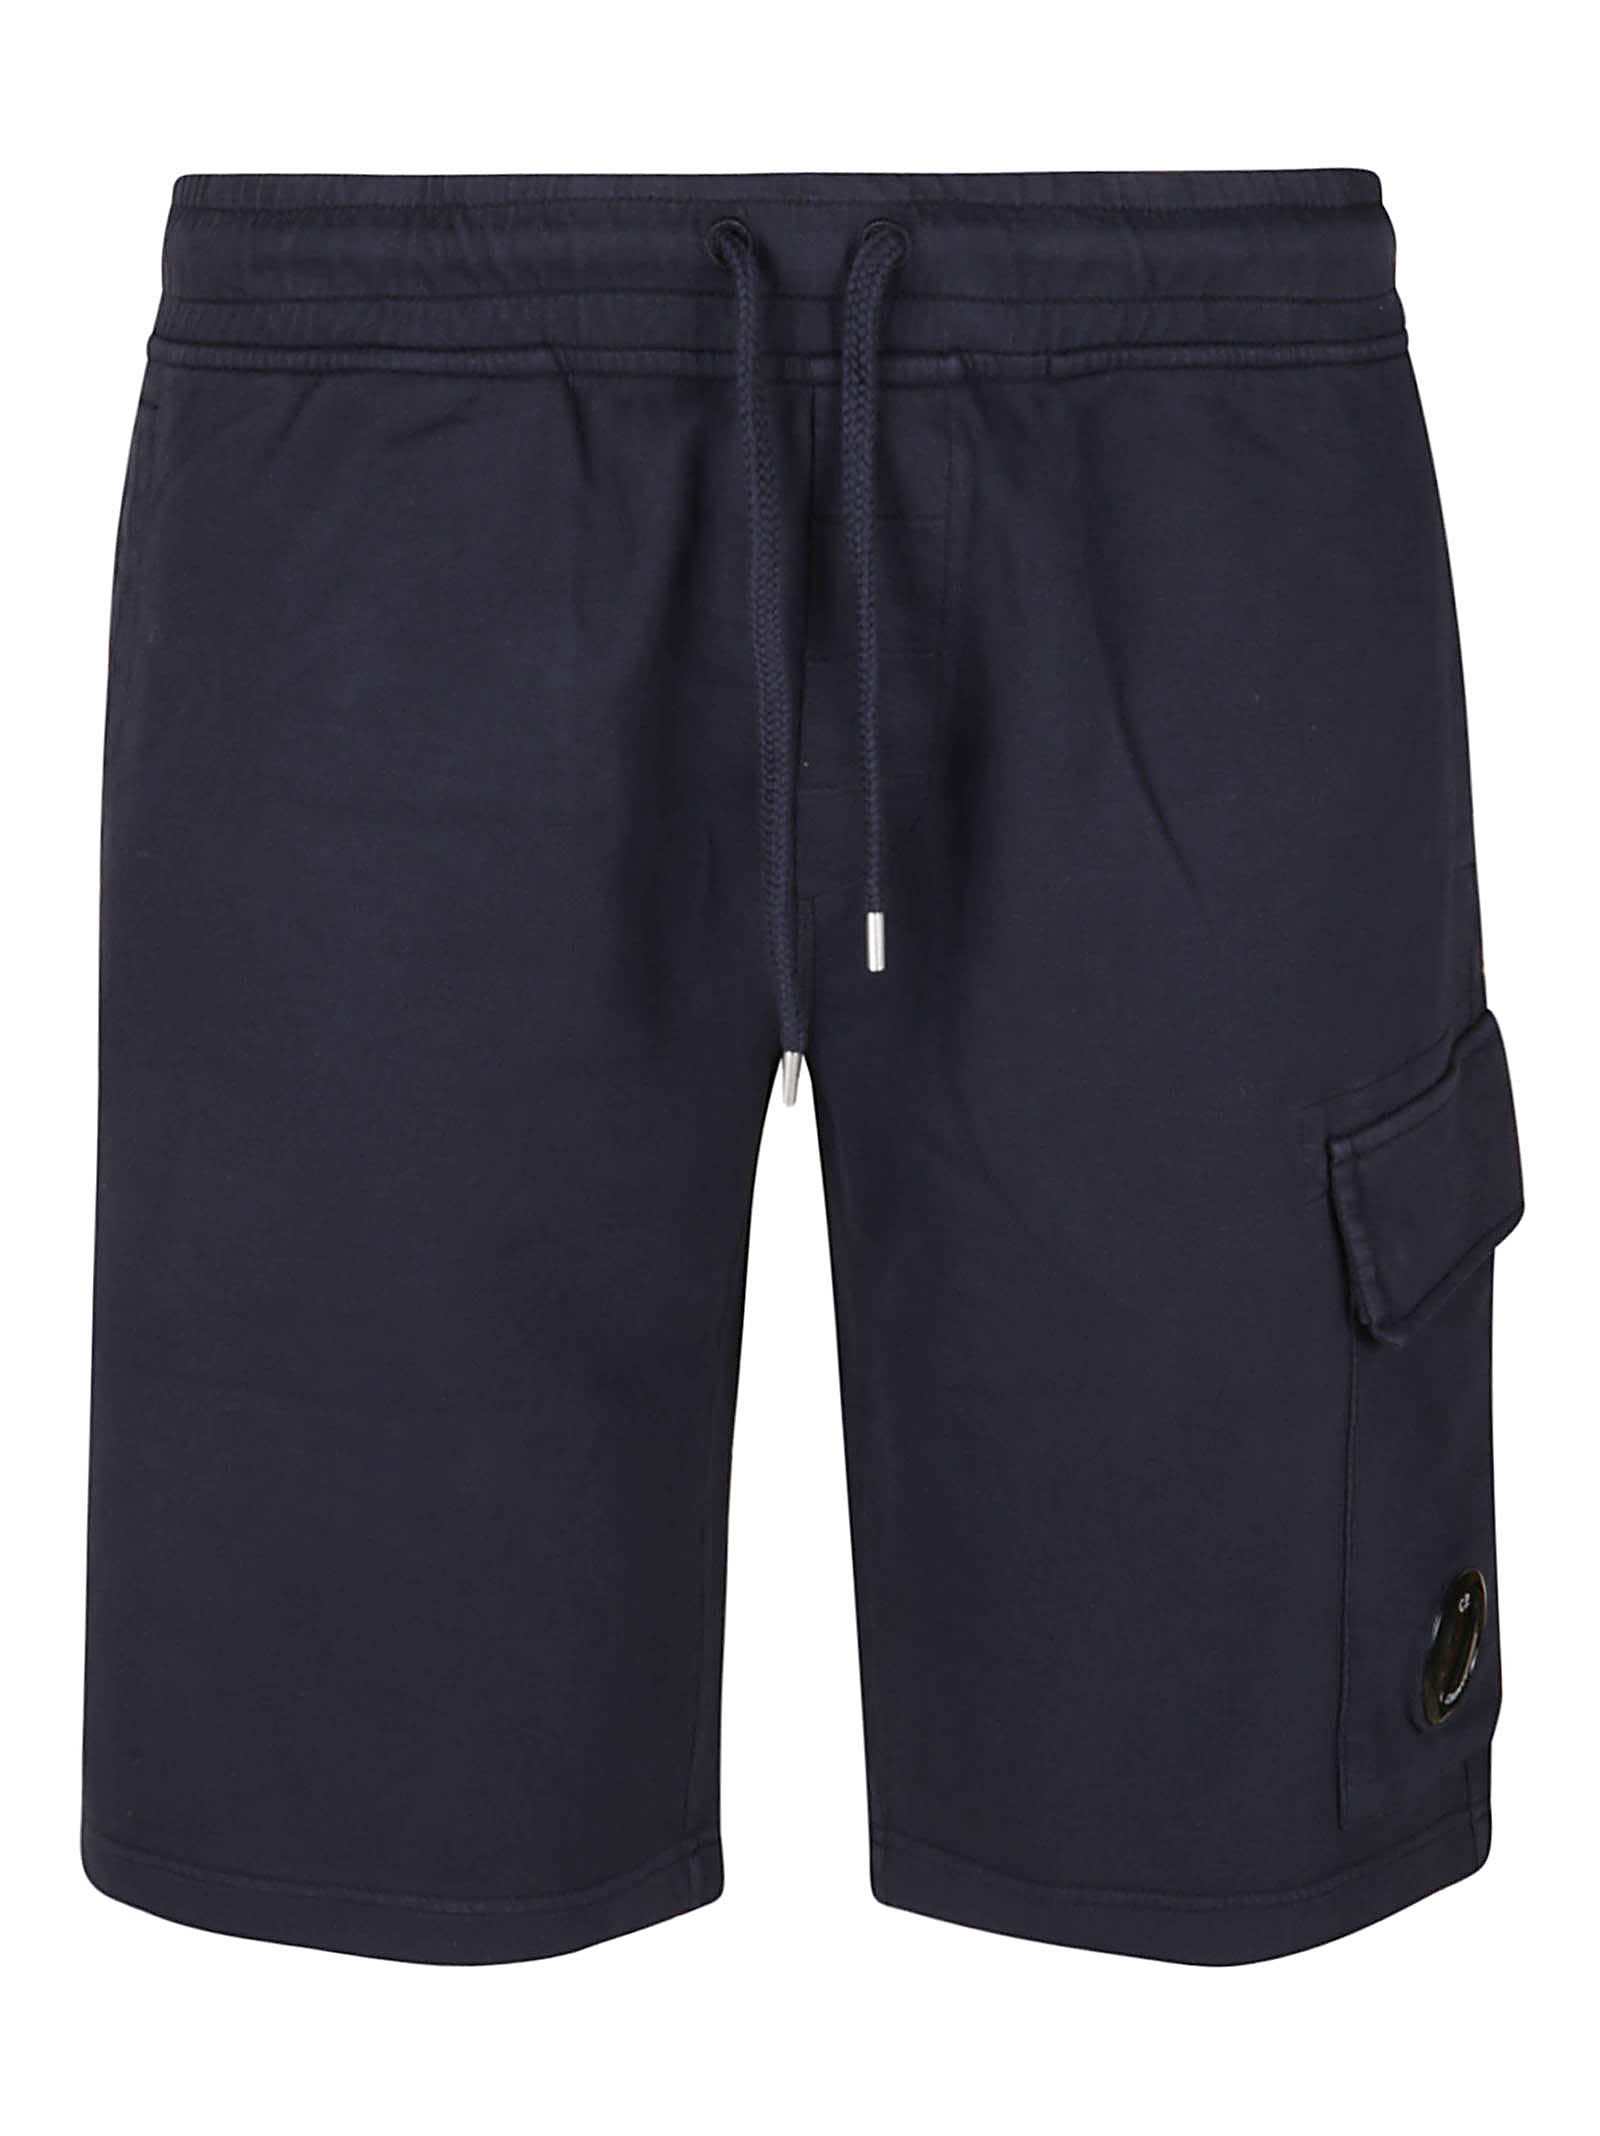 C.P. Company Cargo Drawstringed Shorts